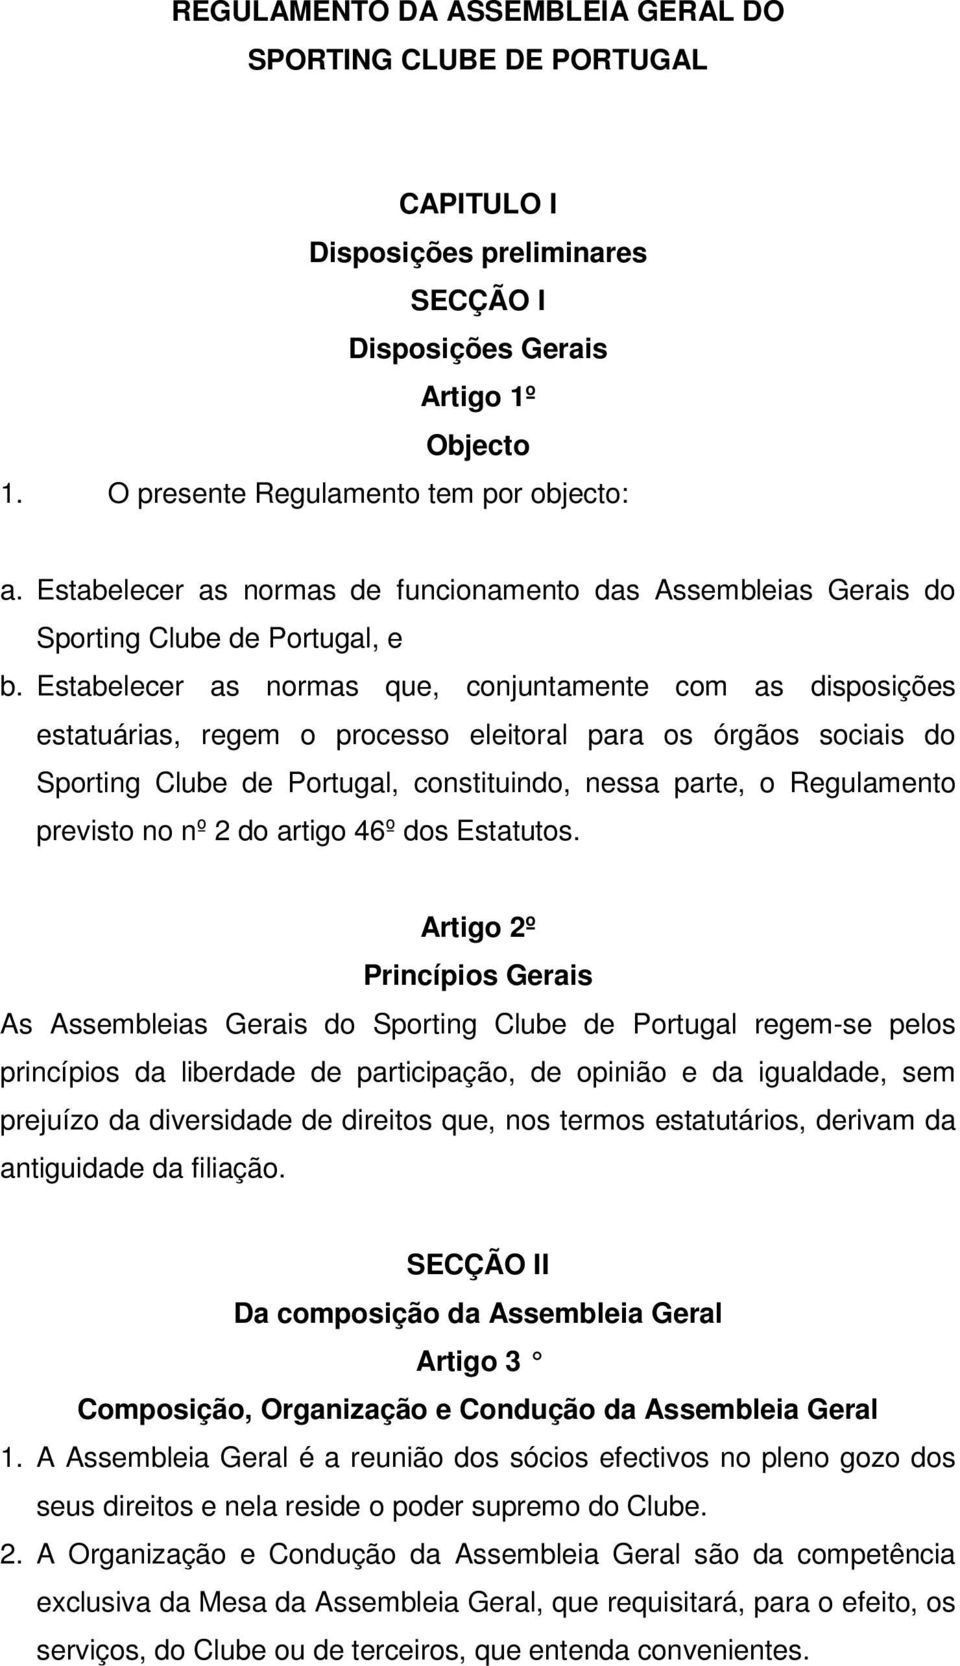 Estabelecer as normas que, conjuntamente com as disposições estatuárias, regem o processo eleitoral para os órgãos sociais do Sporting Clube de Portugal, constituindo, nessa parte, o Regulamento